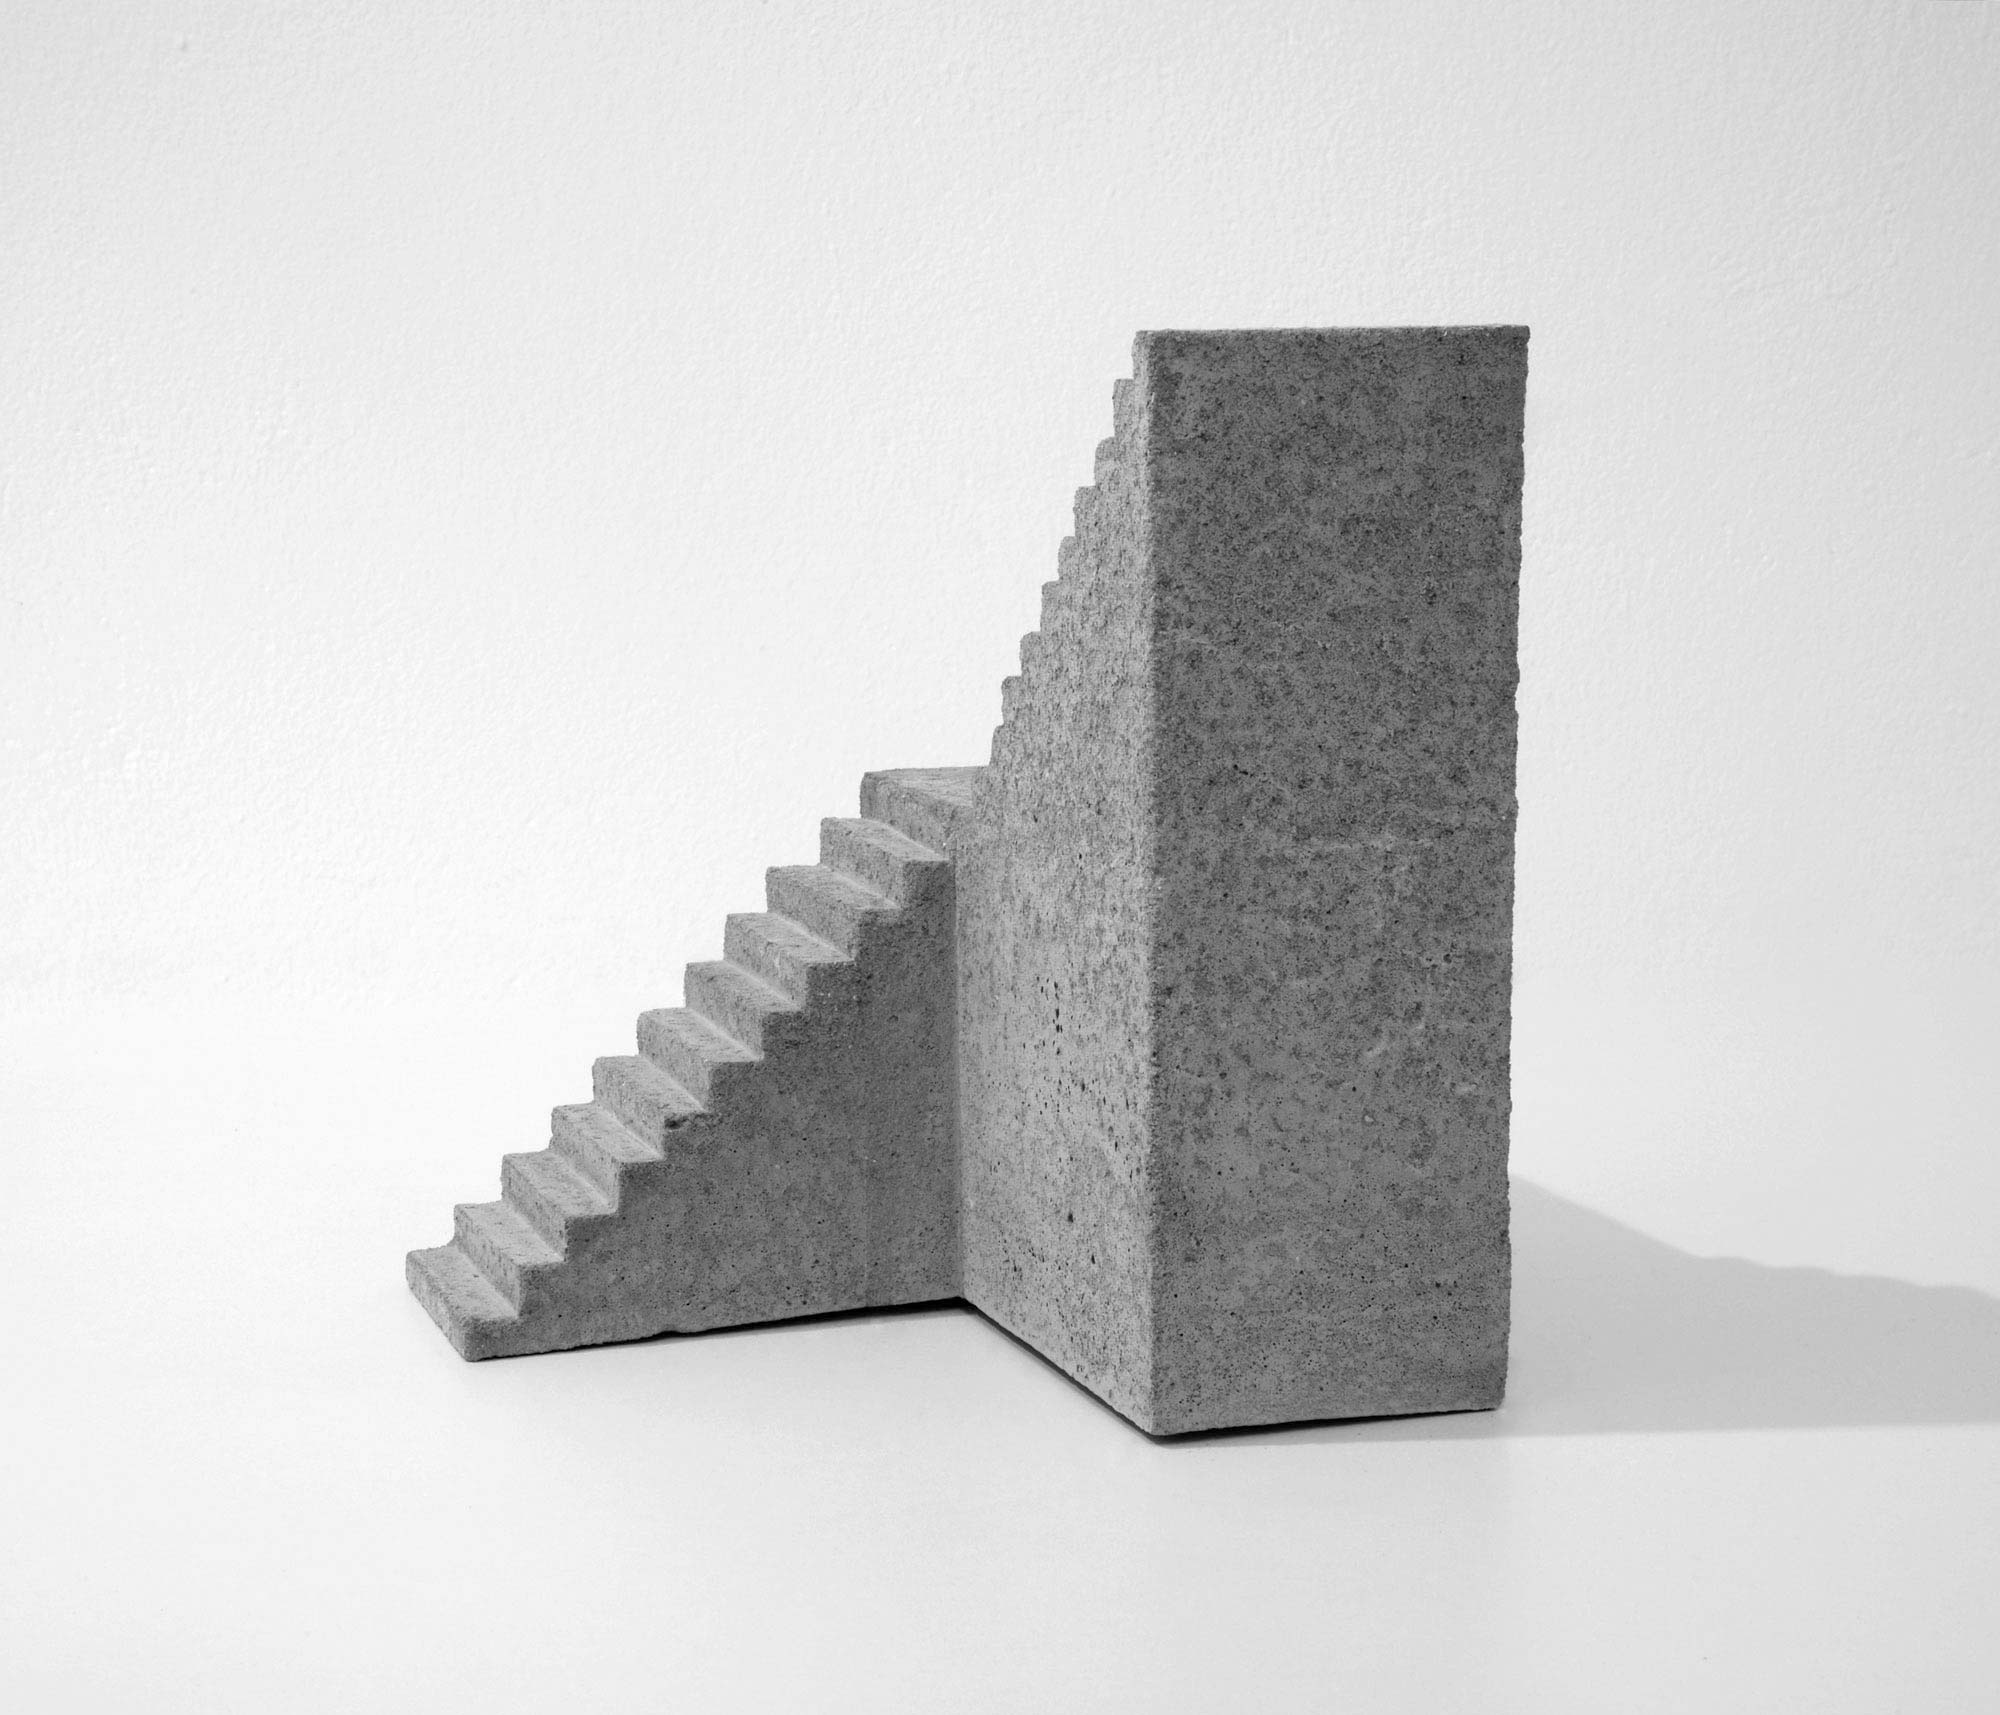 mattia listowski art design objet décoration sculpture béton moulage micro architecture maquette escalier double droite édition limitée numérotée signée paris bruxelles 2019